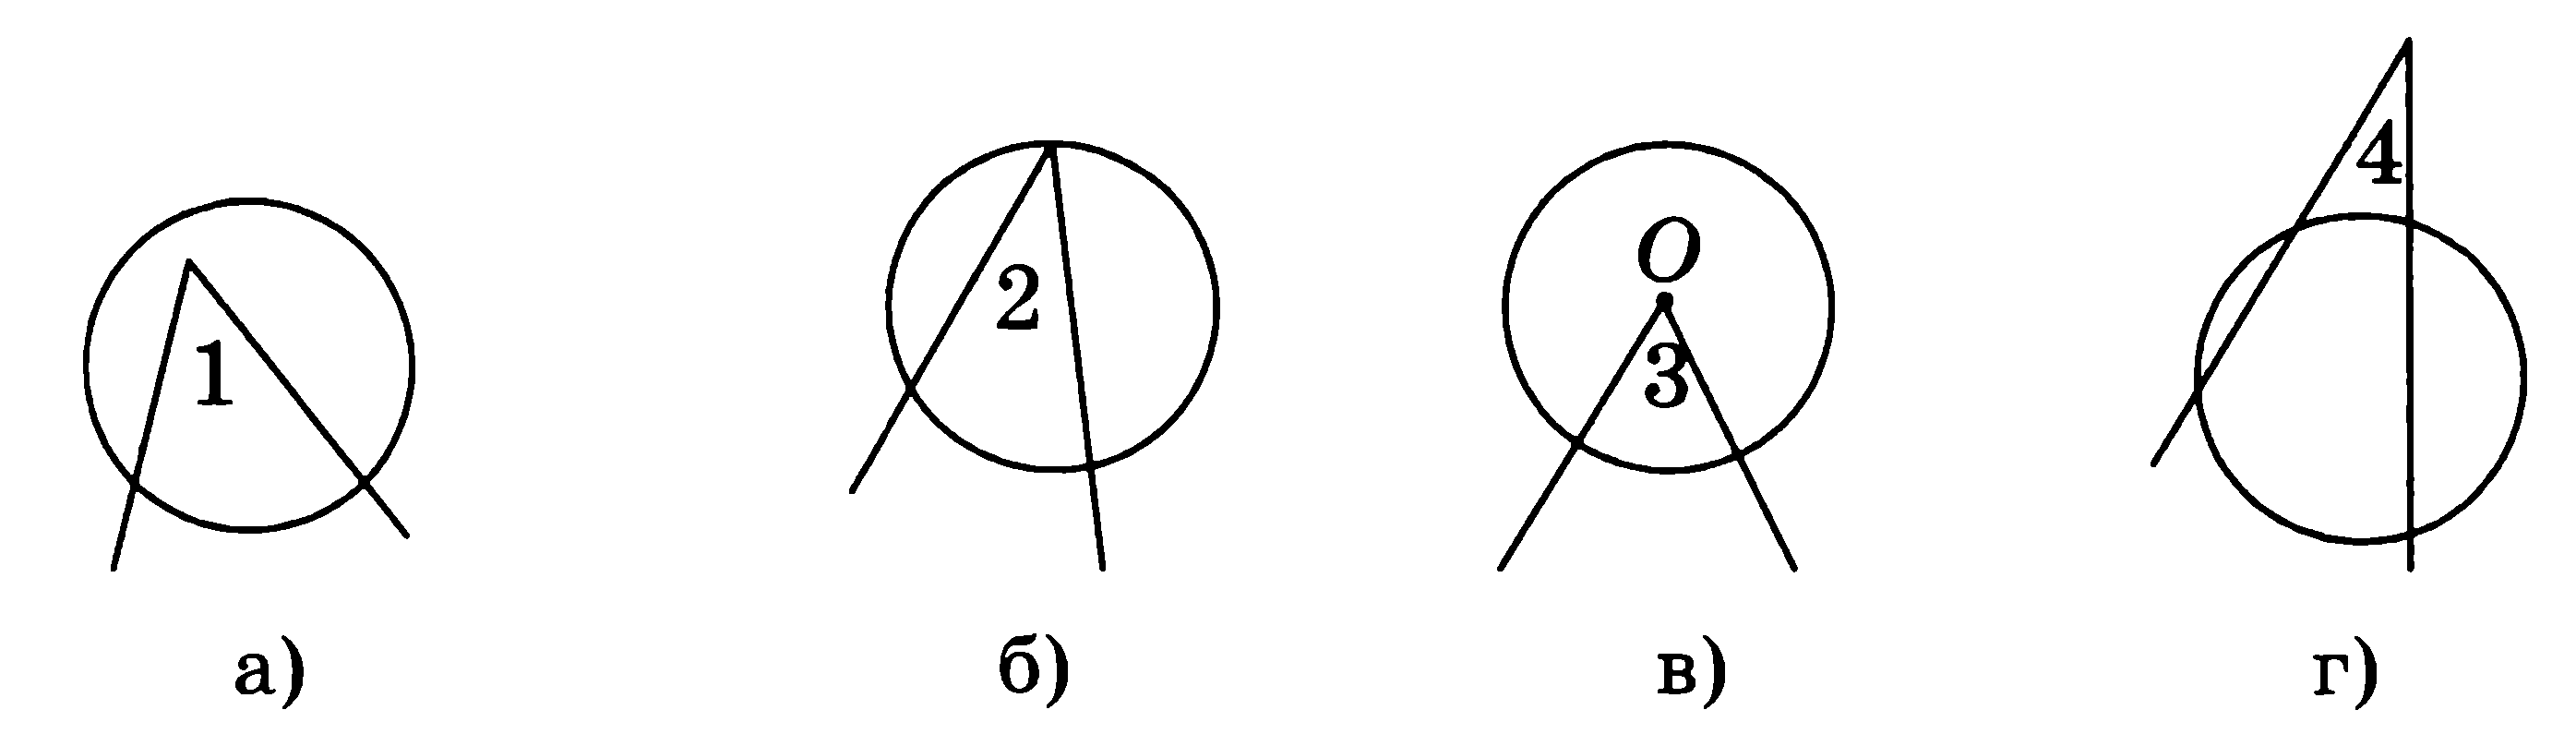 Углы 4 и 8 изображенные на рисунке